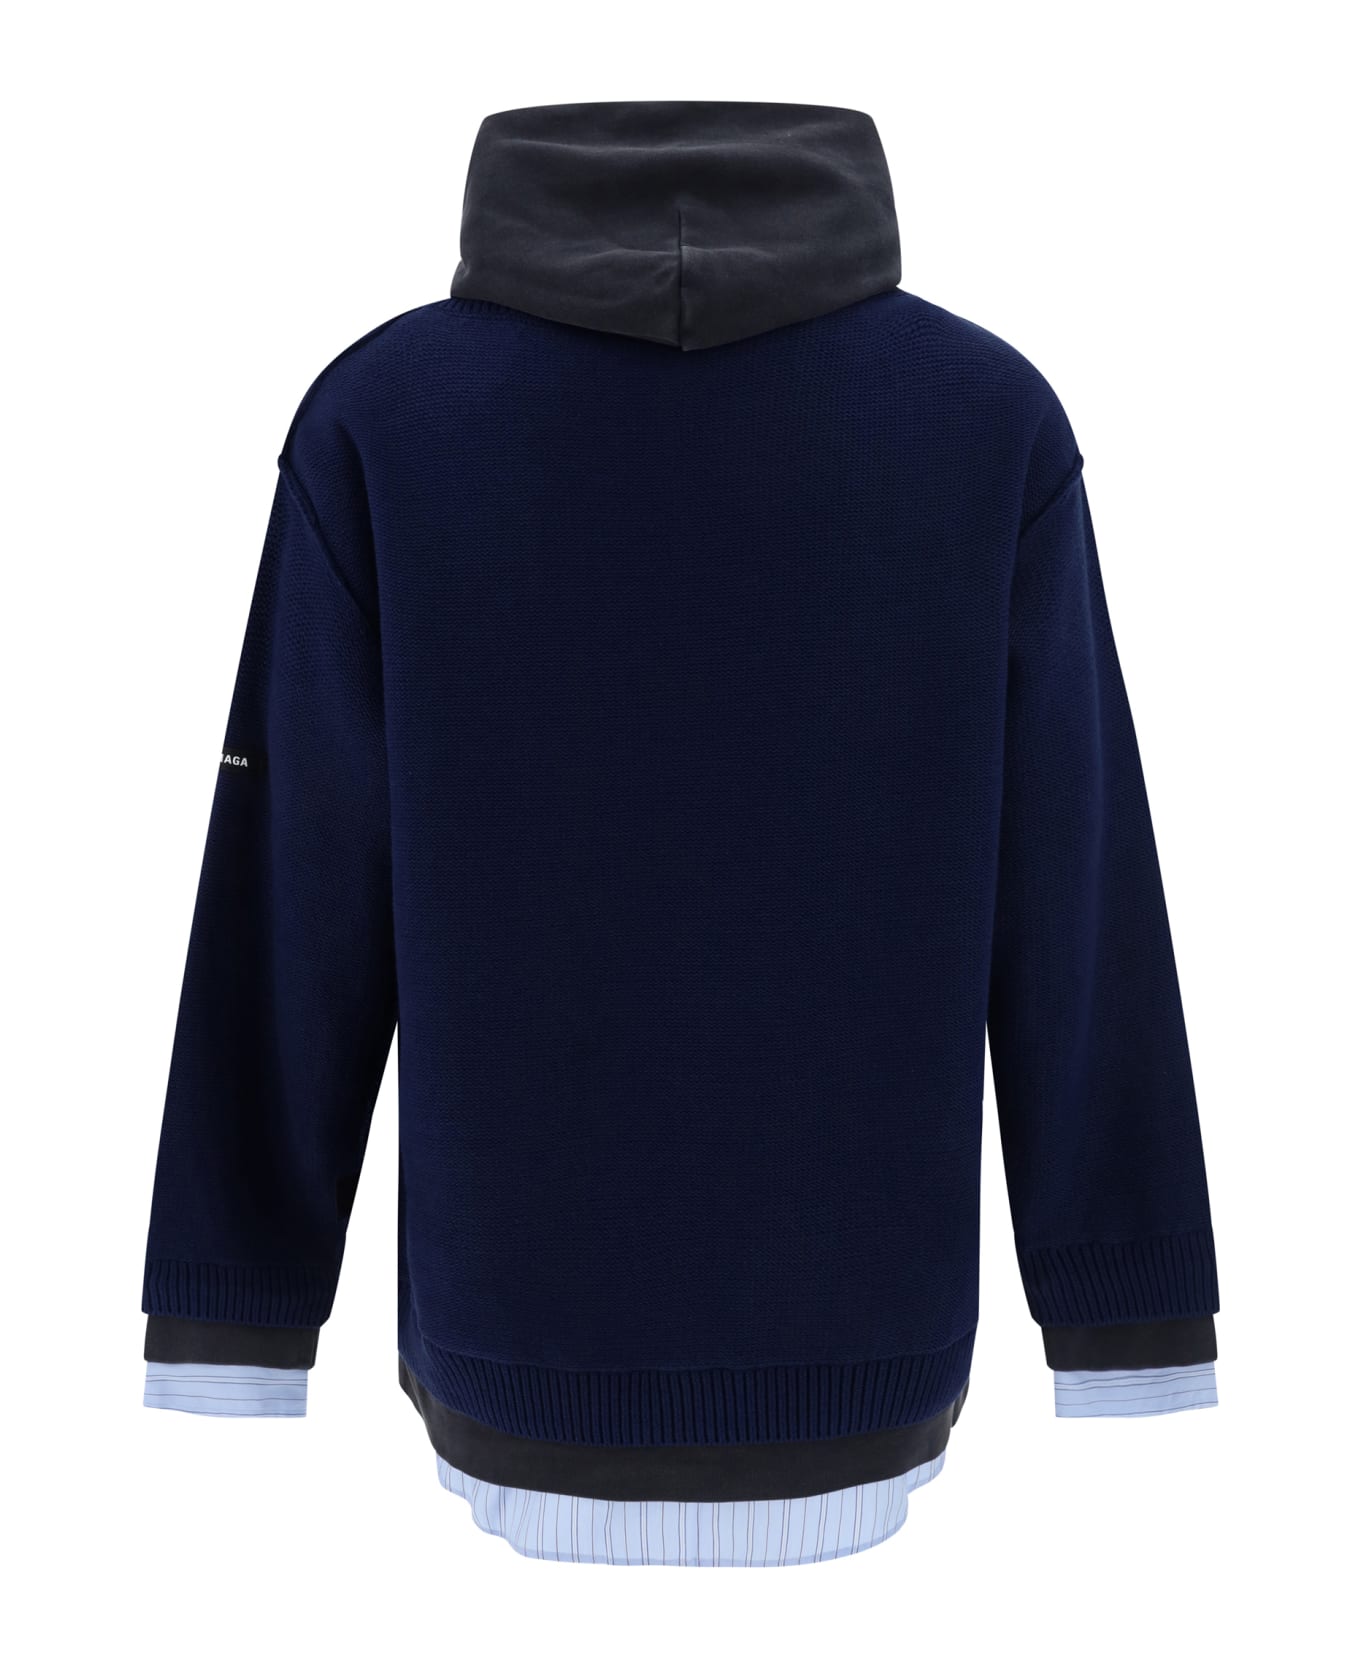 Balenciaga Layered Sweater - Navy フリース